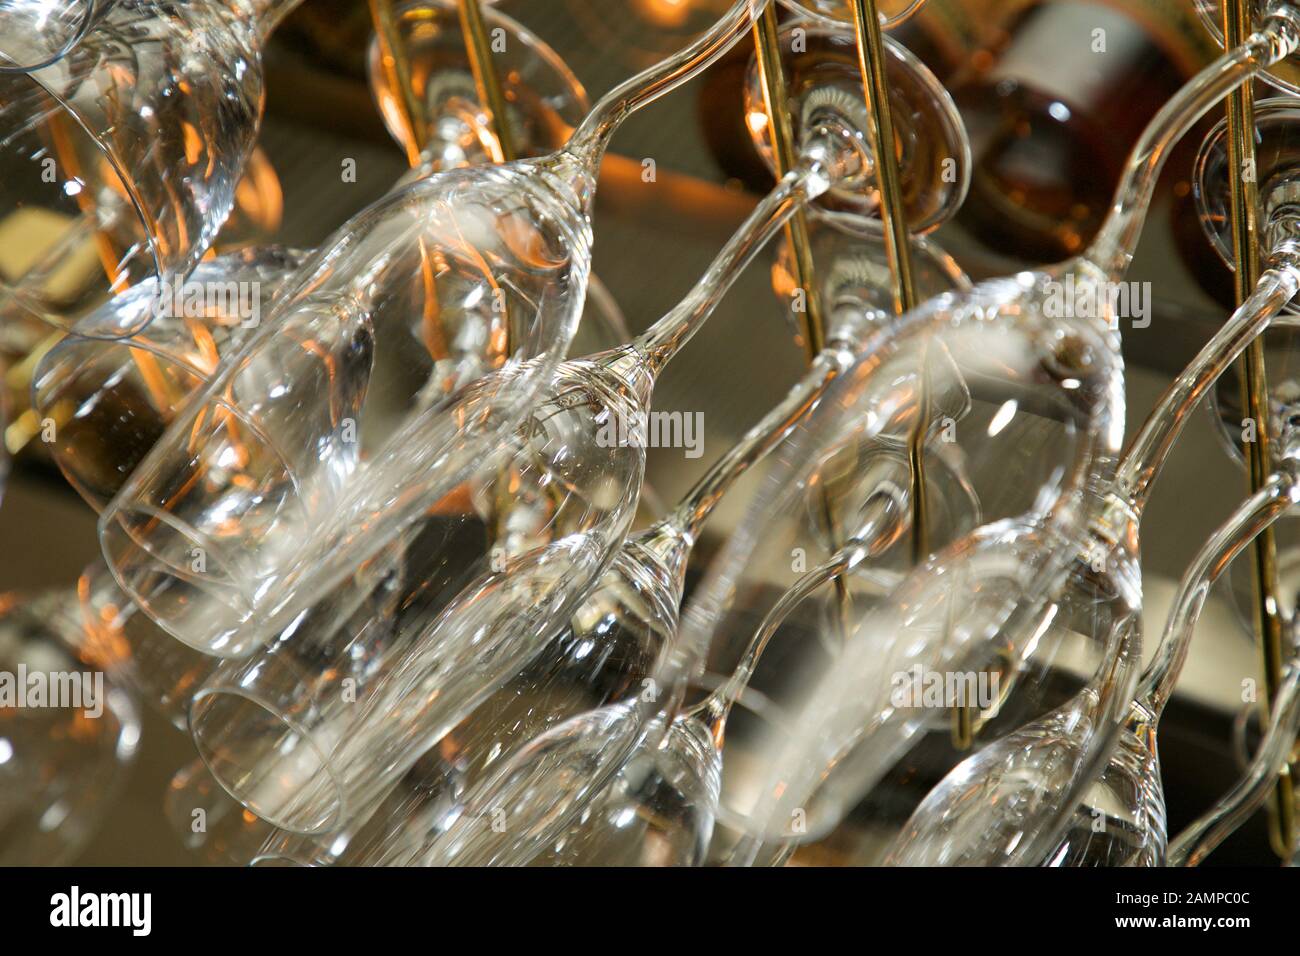 Les verres suspendus à un rack dans un bar ou restaurant. Banque D'Images